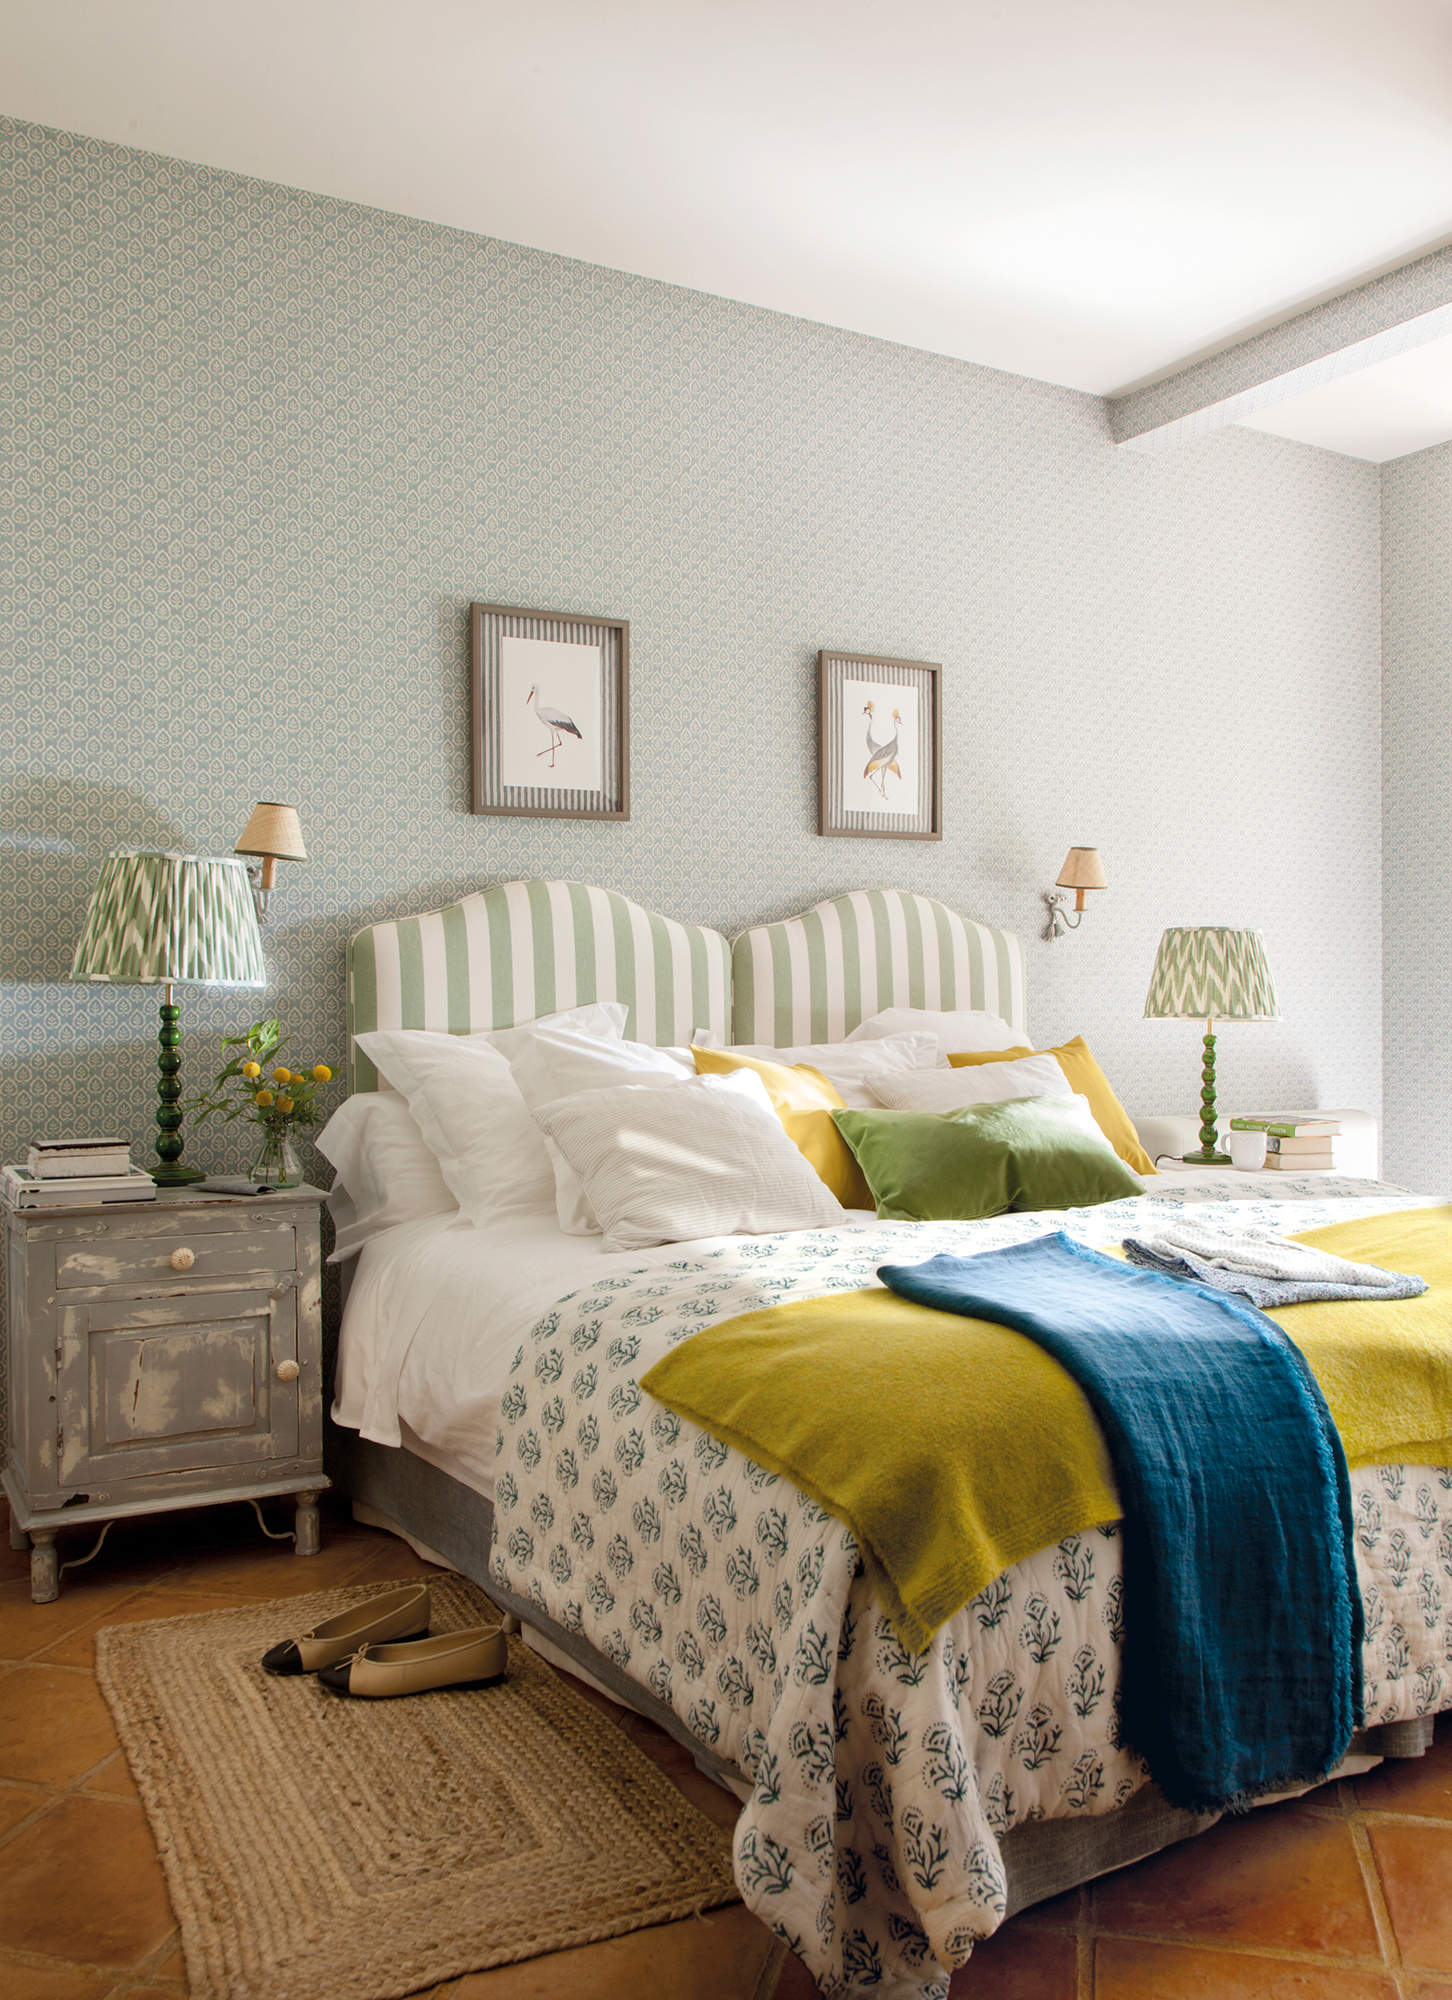 Dormitorio de invitados decorado en azul y verde.